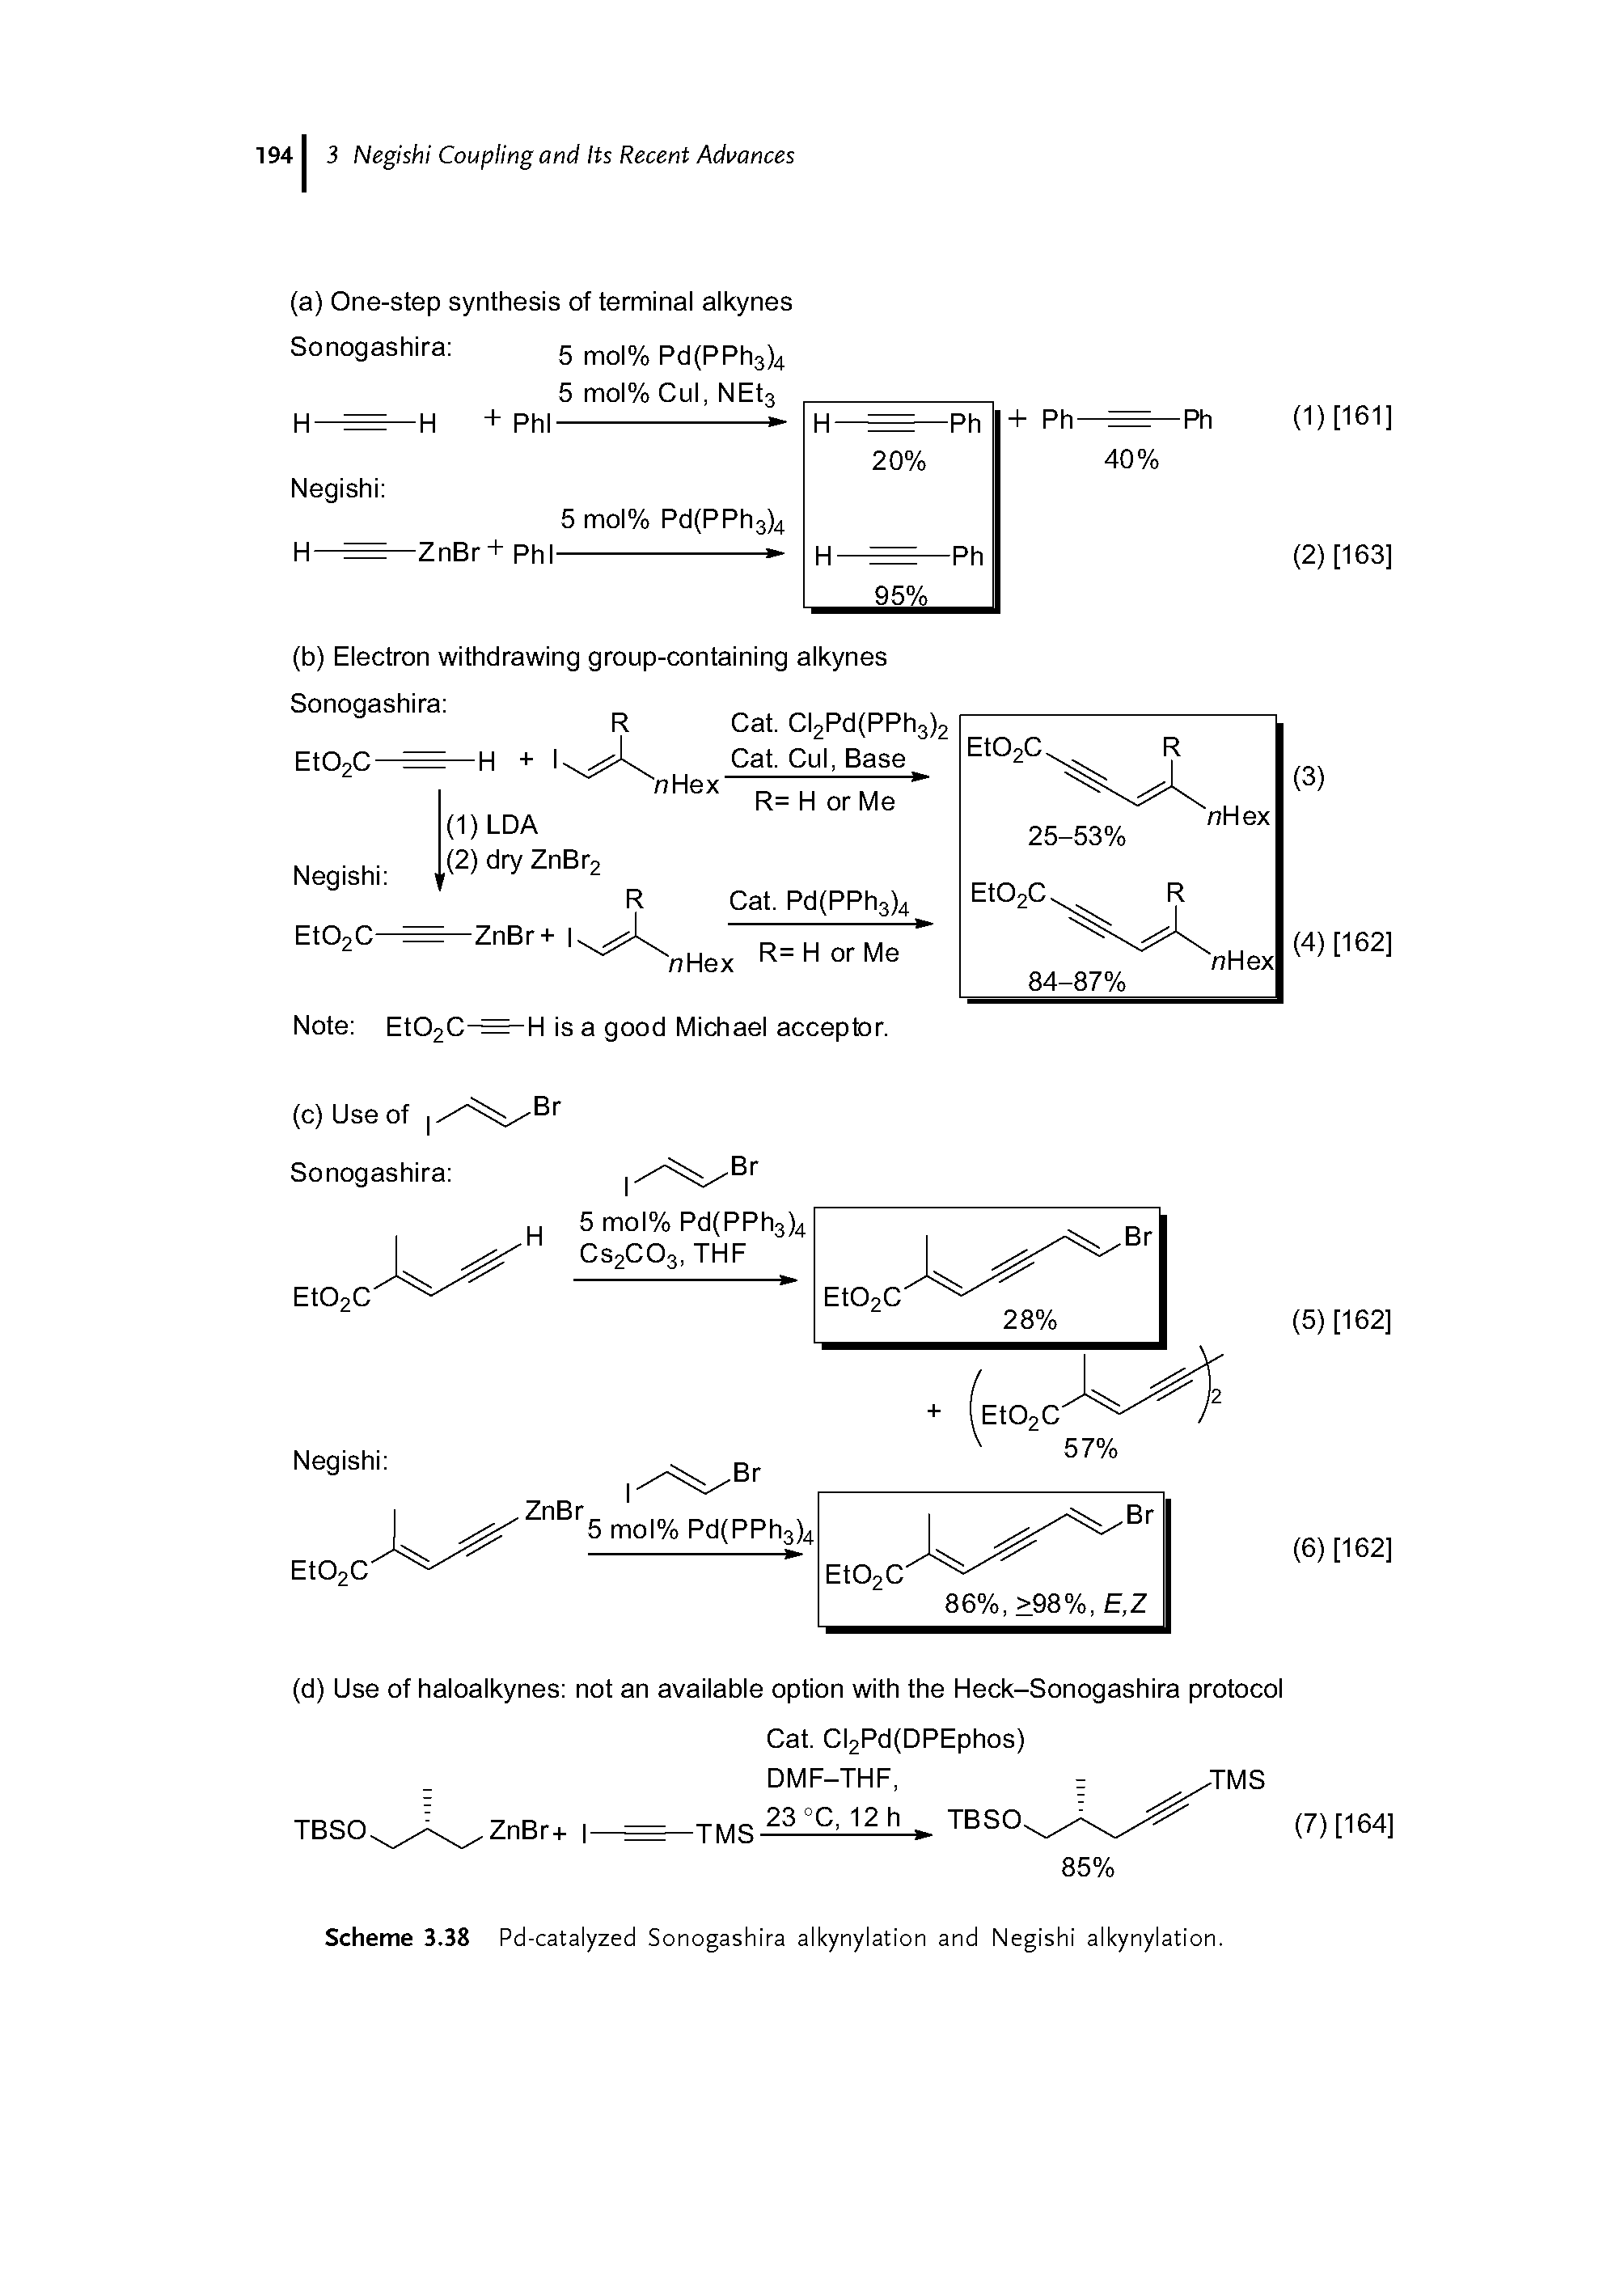 Scheme 3.38 Pd-catalyzed Sonogashira alkynylation and Negishi alkynylation.